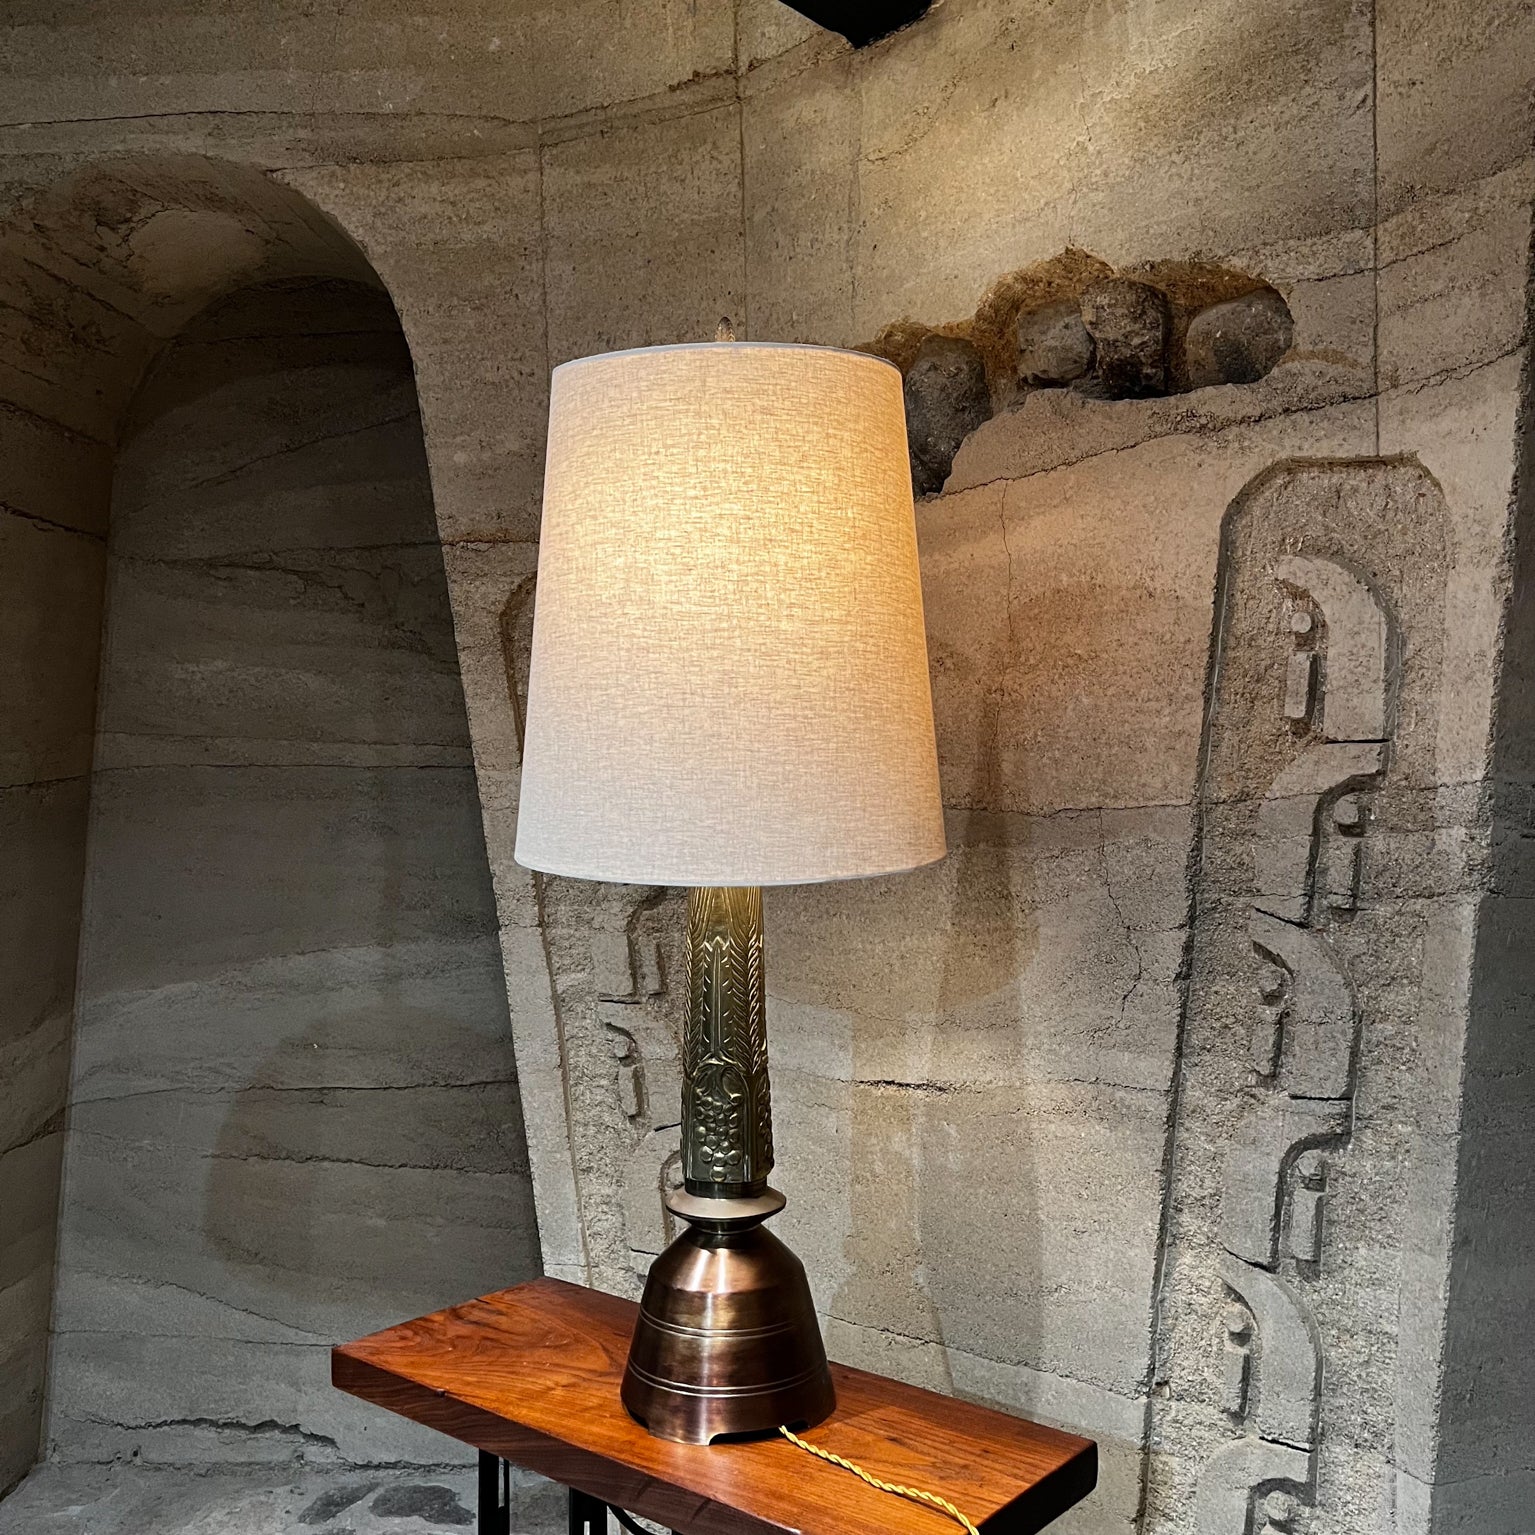 Vintage-Tischlampe aus massivem Messing, von Frank Lloyd Wright inspiriert
33,5 bis Muffe, 45 bis Endstück X 8 Durchmesser
Gebrauchter Original-Vintage-Zustand.
Der Schirm ist nicht enthalten.
Bitte sehen Sie die gezeigten Bilder.

